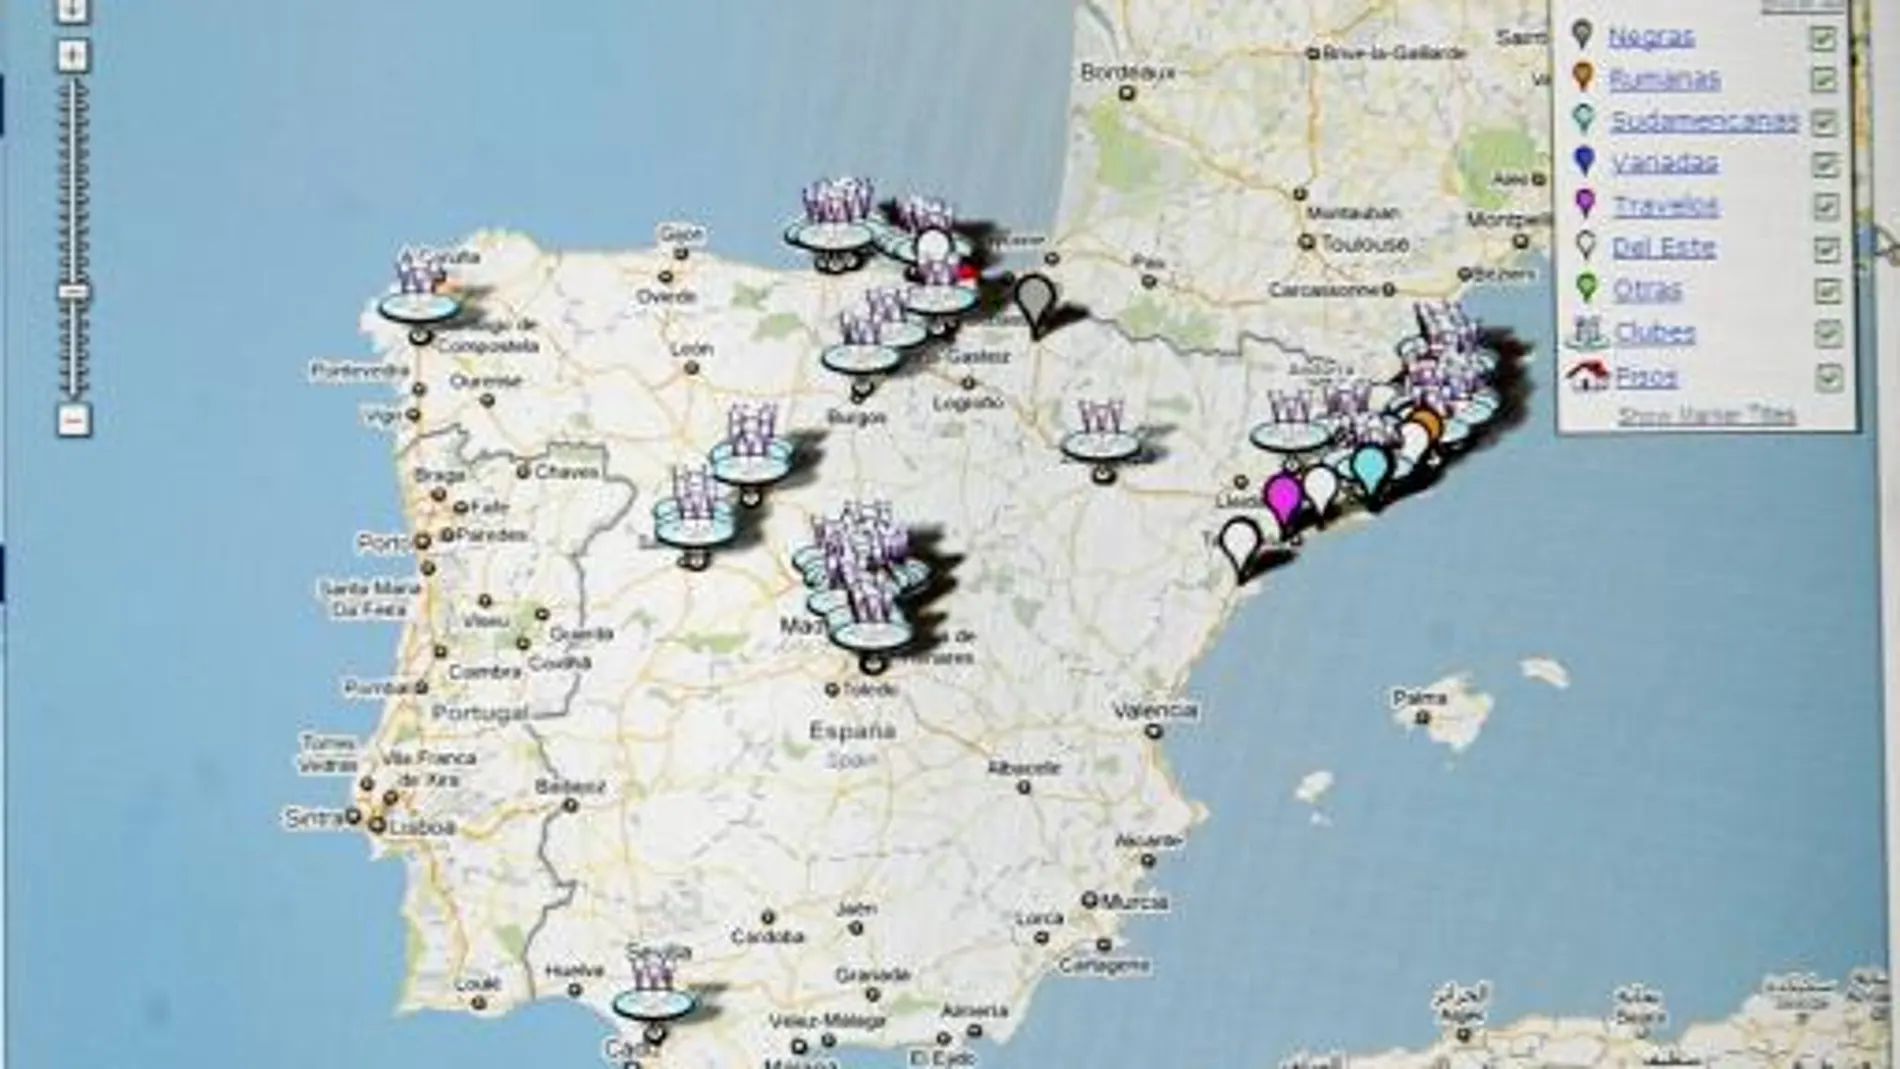 El mapa de la web detalla los lugares exactos donde se sitúan las meretrices